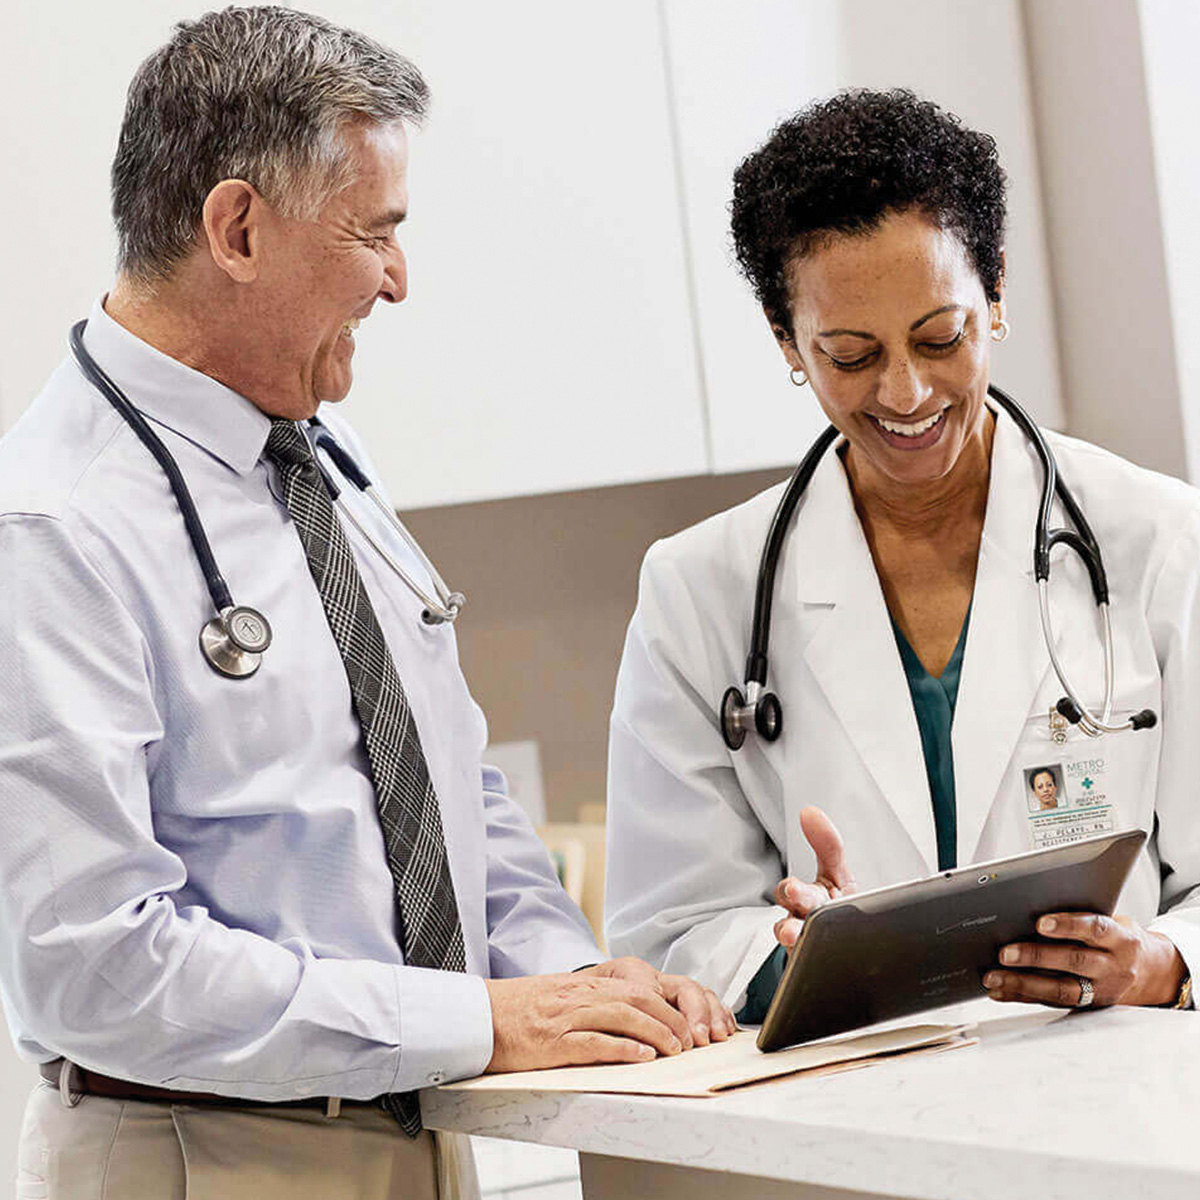 Dos médicos sonriendo mientras conversan sobre información que ven en una tablet.